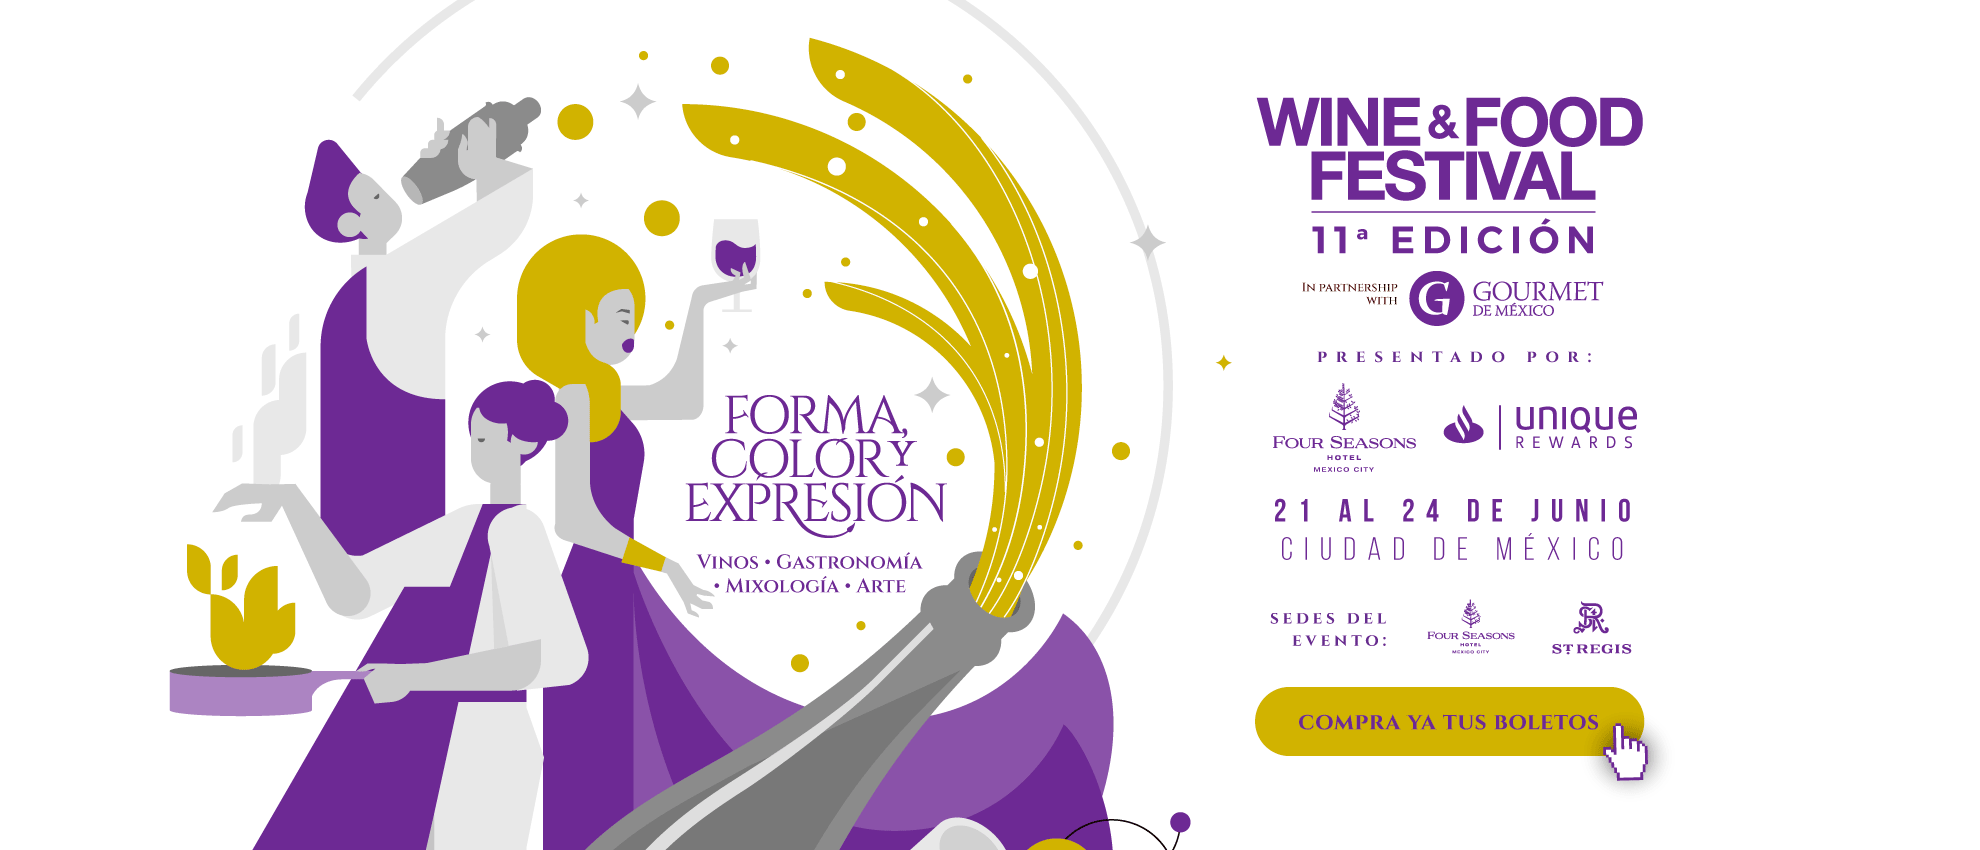 wine and food festival edicion once forma color y expresion